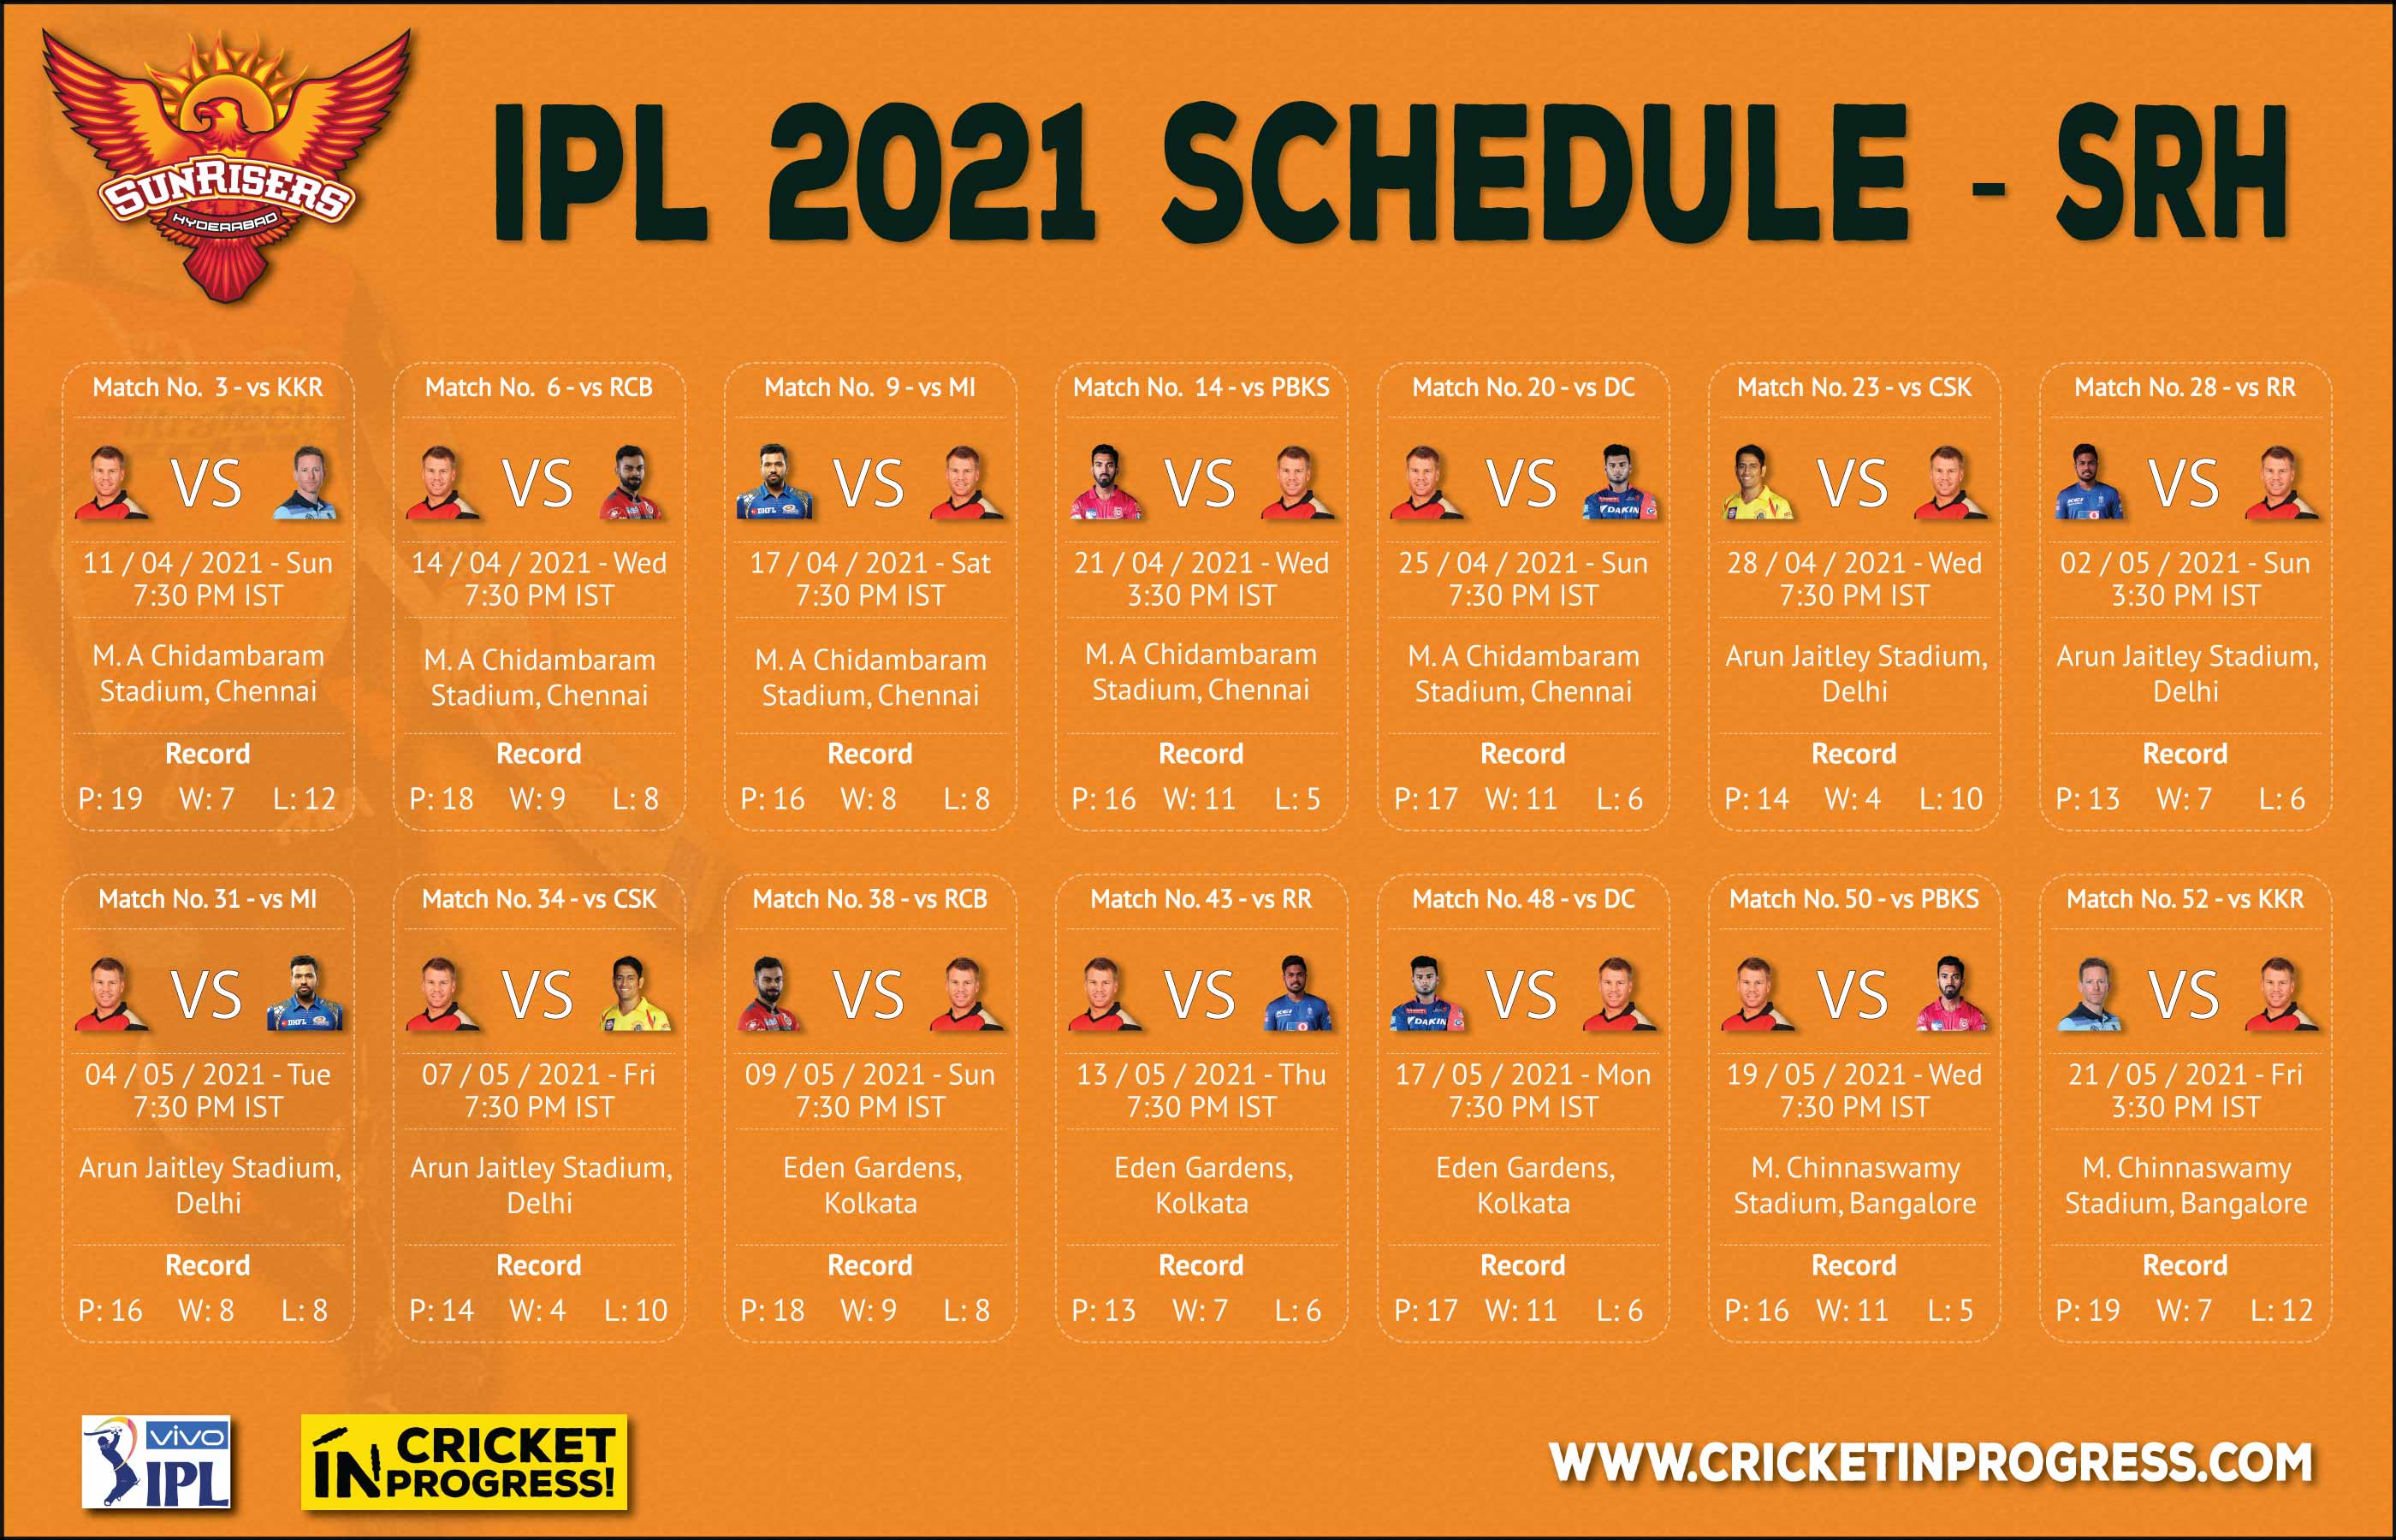 IPL 2021 SRH Schedule